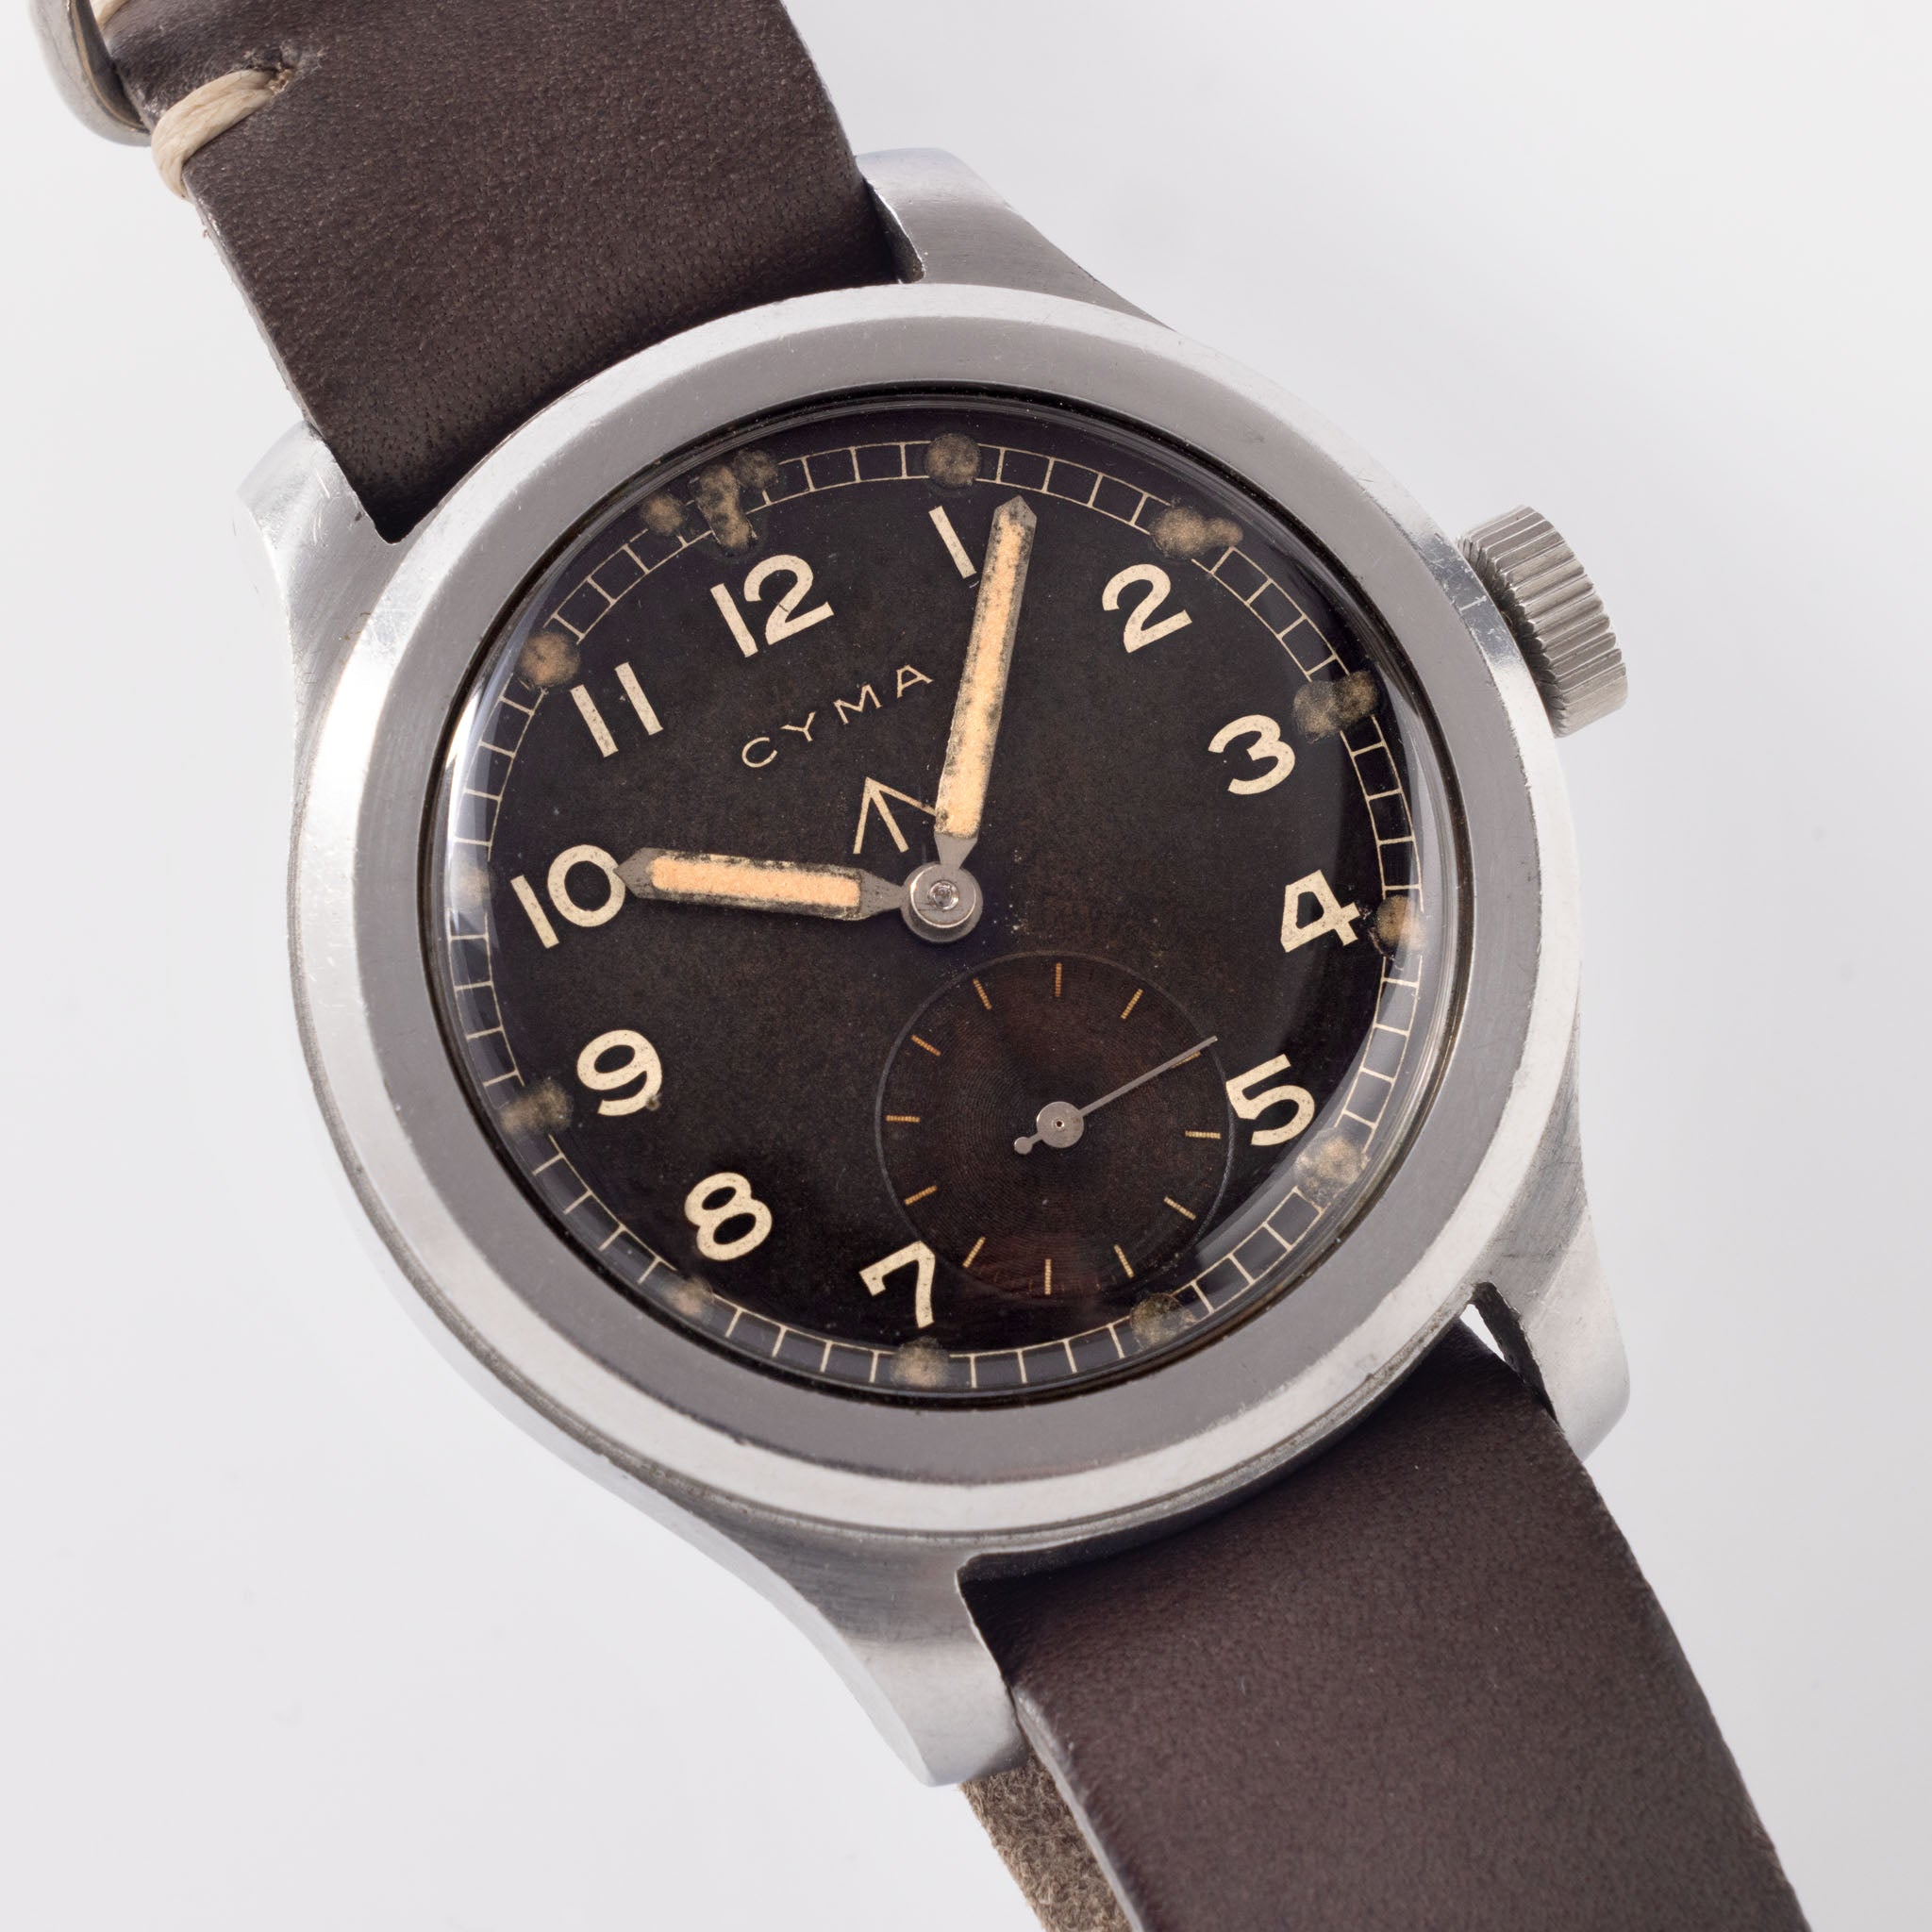 Cyma Dirty Dozen Military Issued Watch